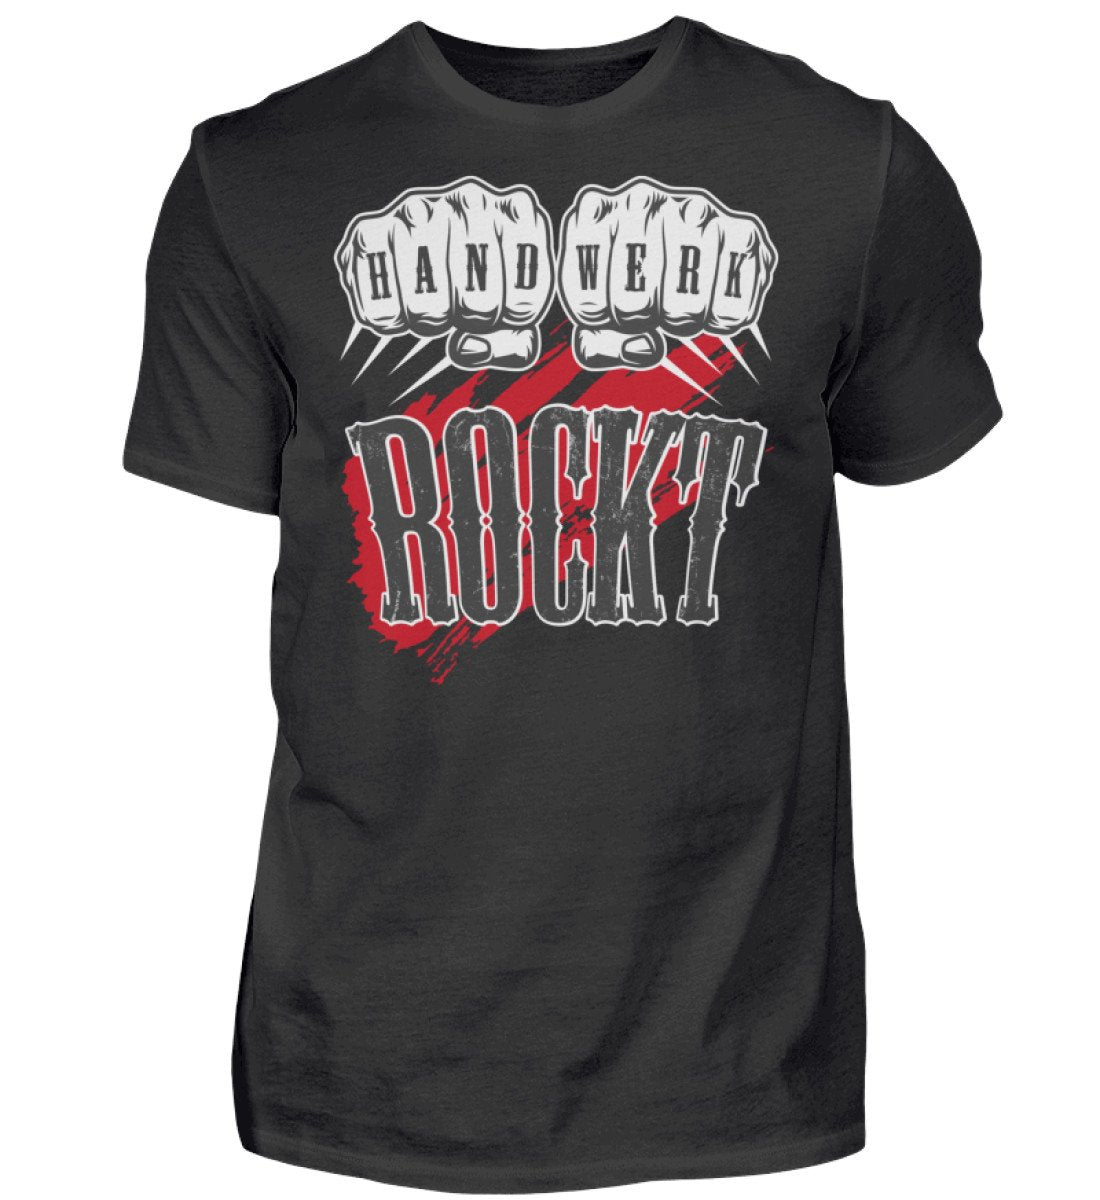 Handwerk Rockt - Handwerker T-Shirt